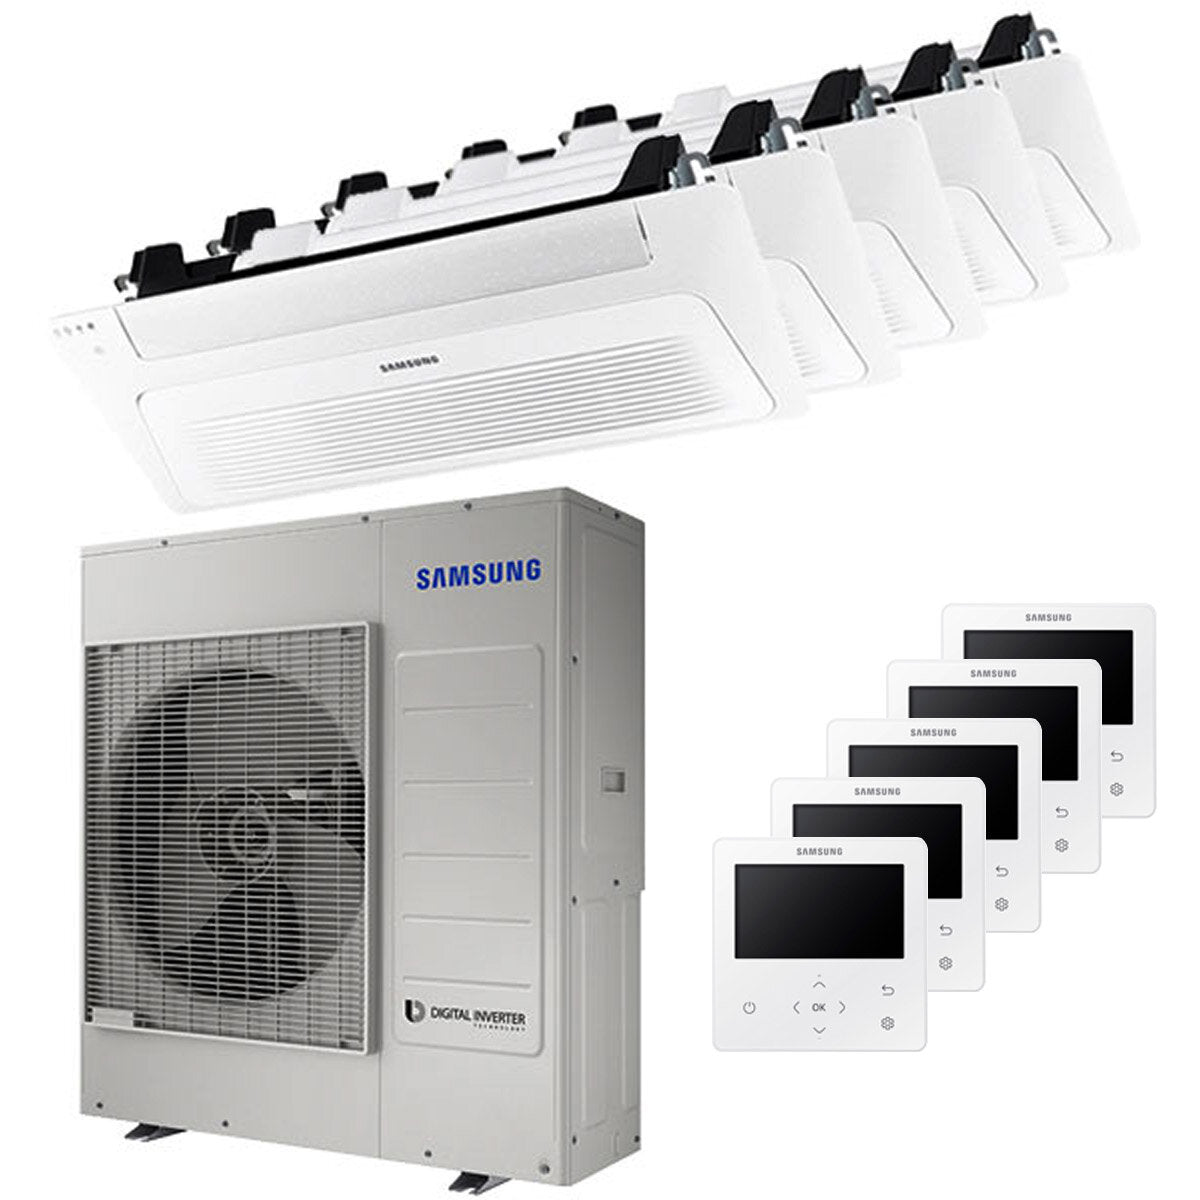 Samsung Climatiseur WindFree Cassette 1 voie penta split 9000 + 9000 + 9000 + 9000 + 12000 BTU inverter A++ unité extérieure 10,0 kW